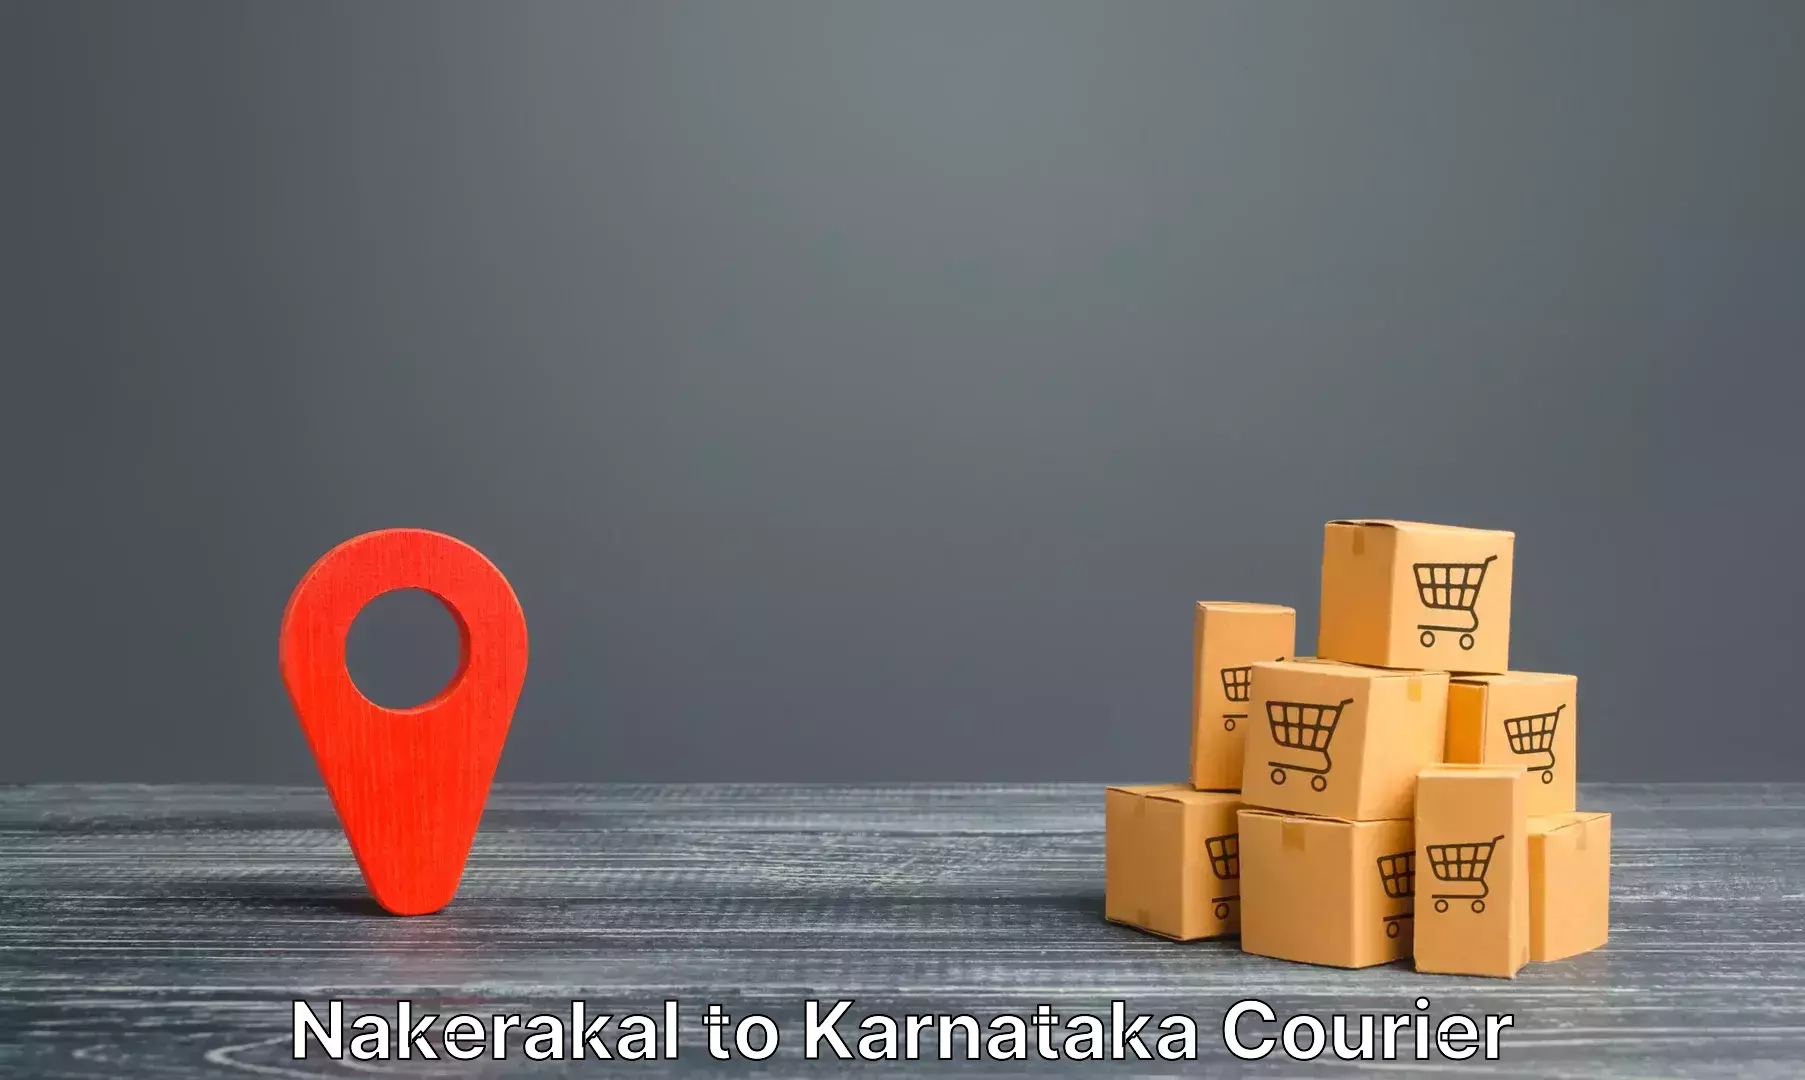 Global baggage shipping Nakerakal to Toranagallu